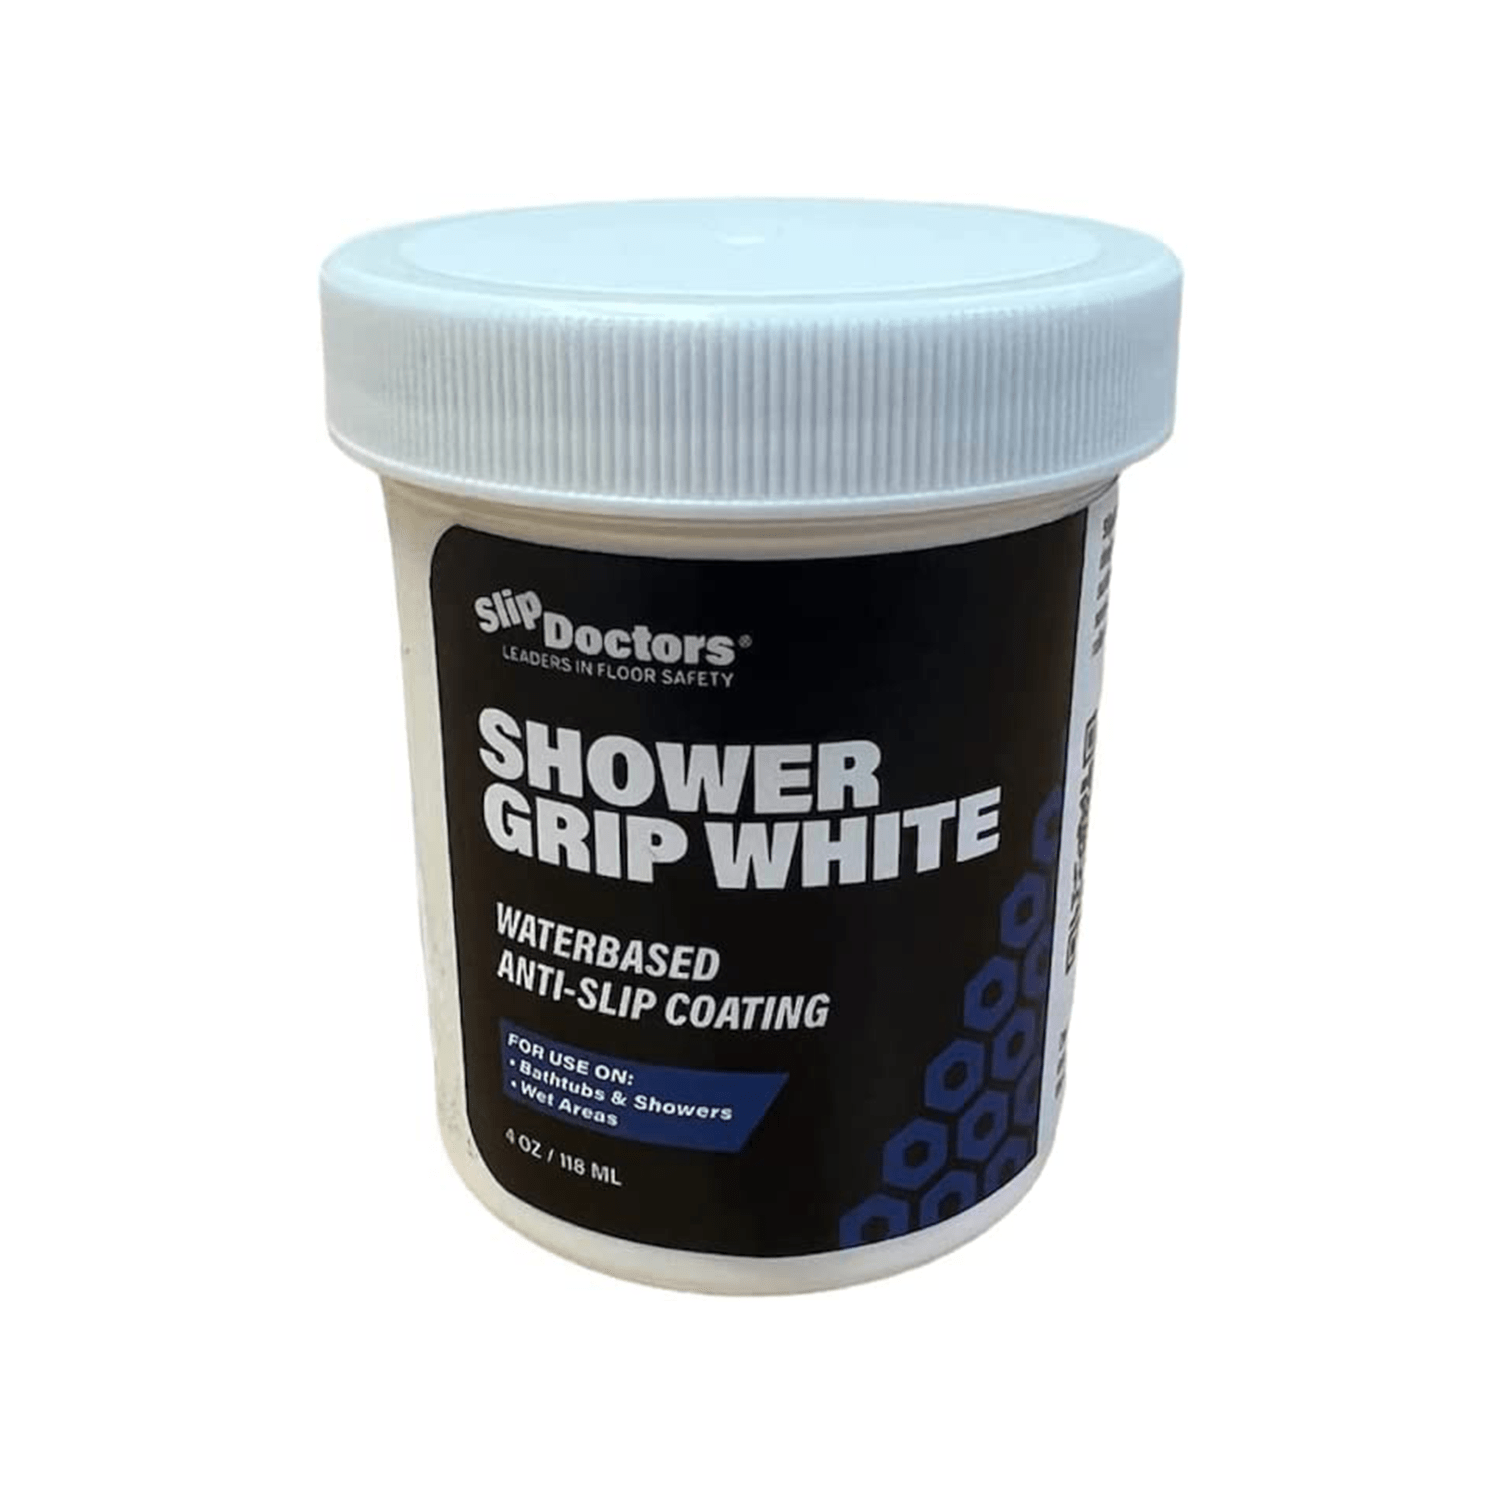 Bathtub & Shower Resurfacing - Get A Grip